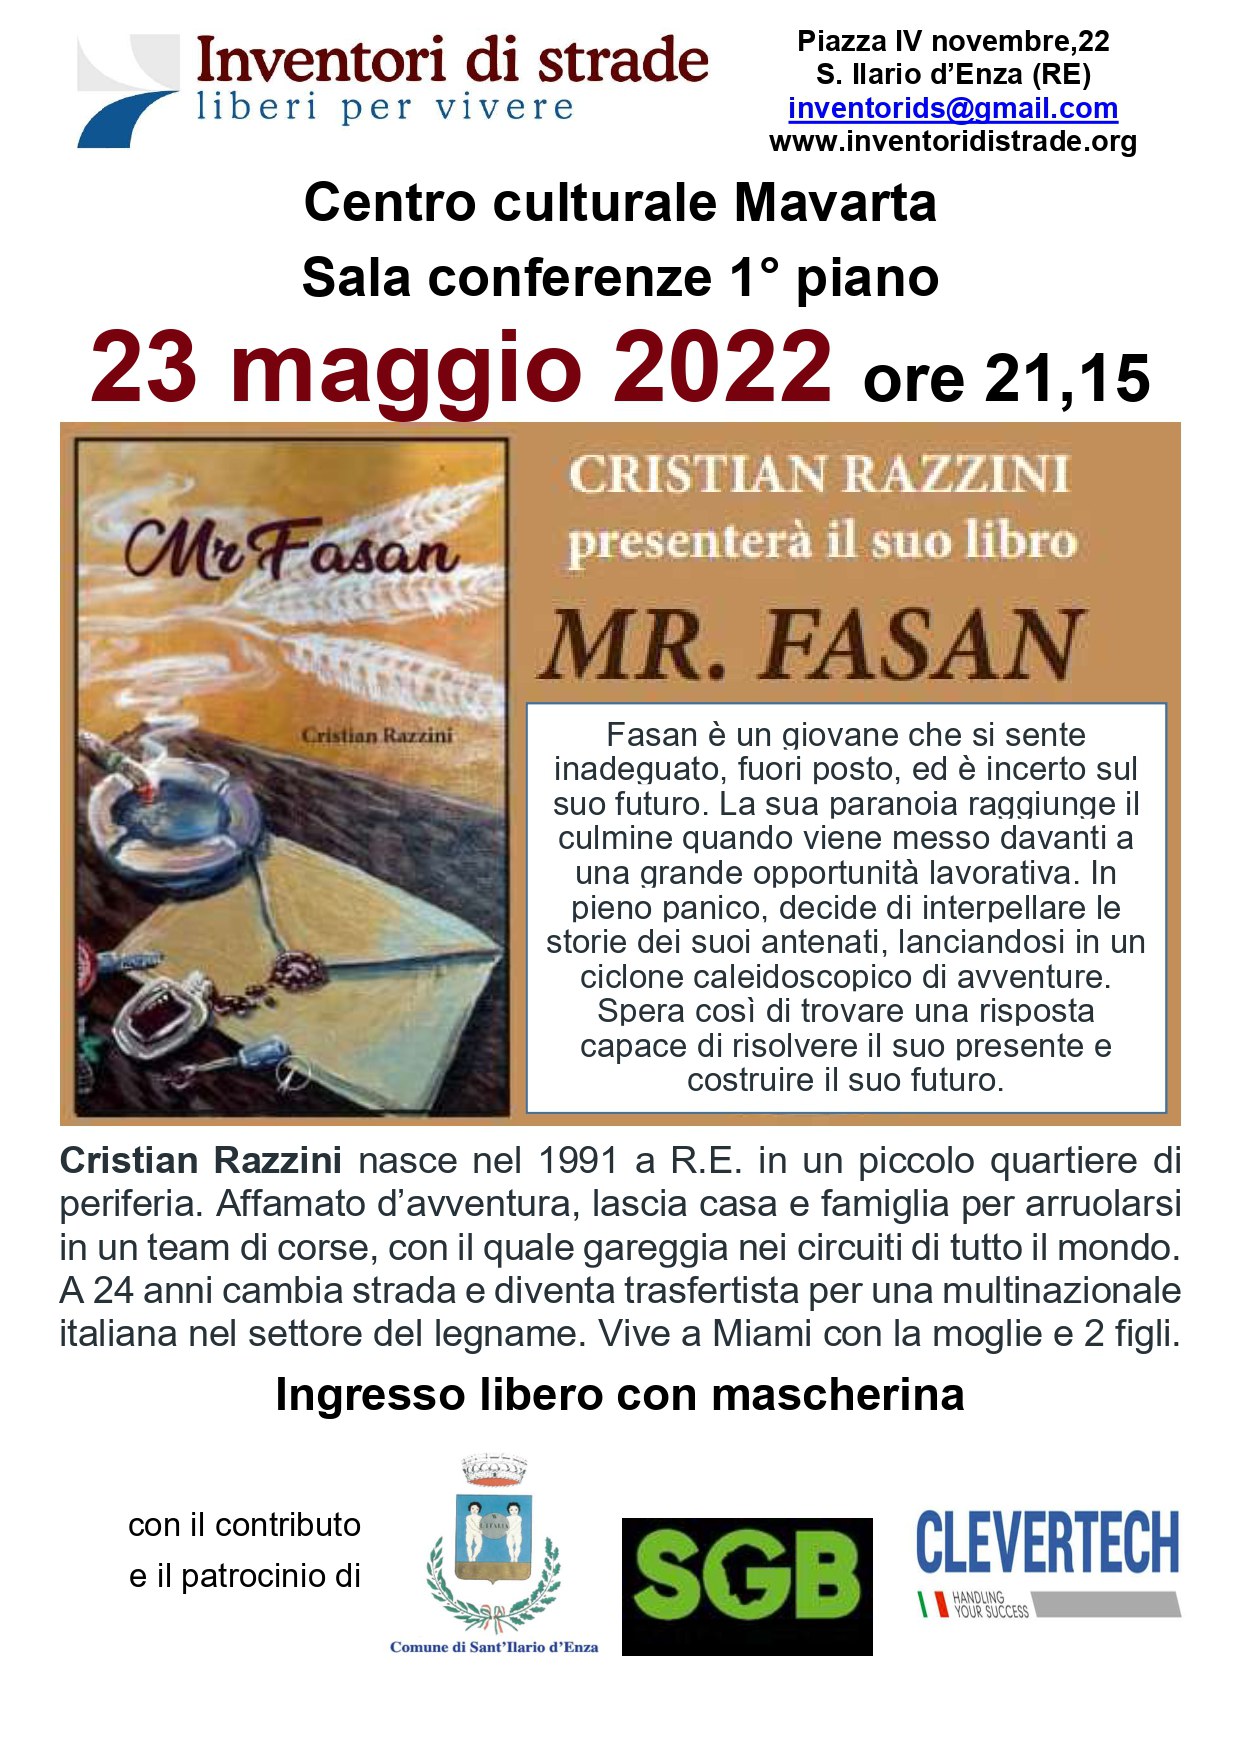 Cristian Razzini presenta il suo libro Mr. Fasan - 23 maggio 2022